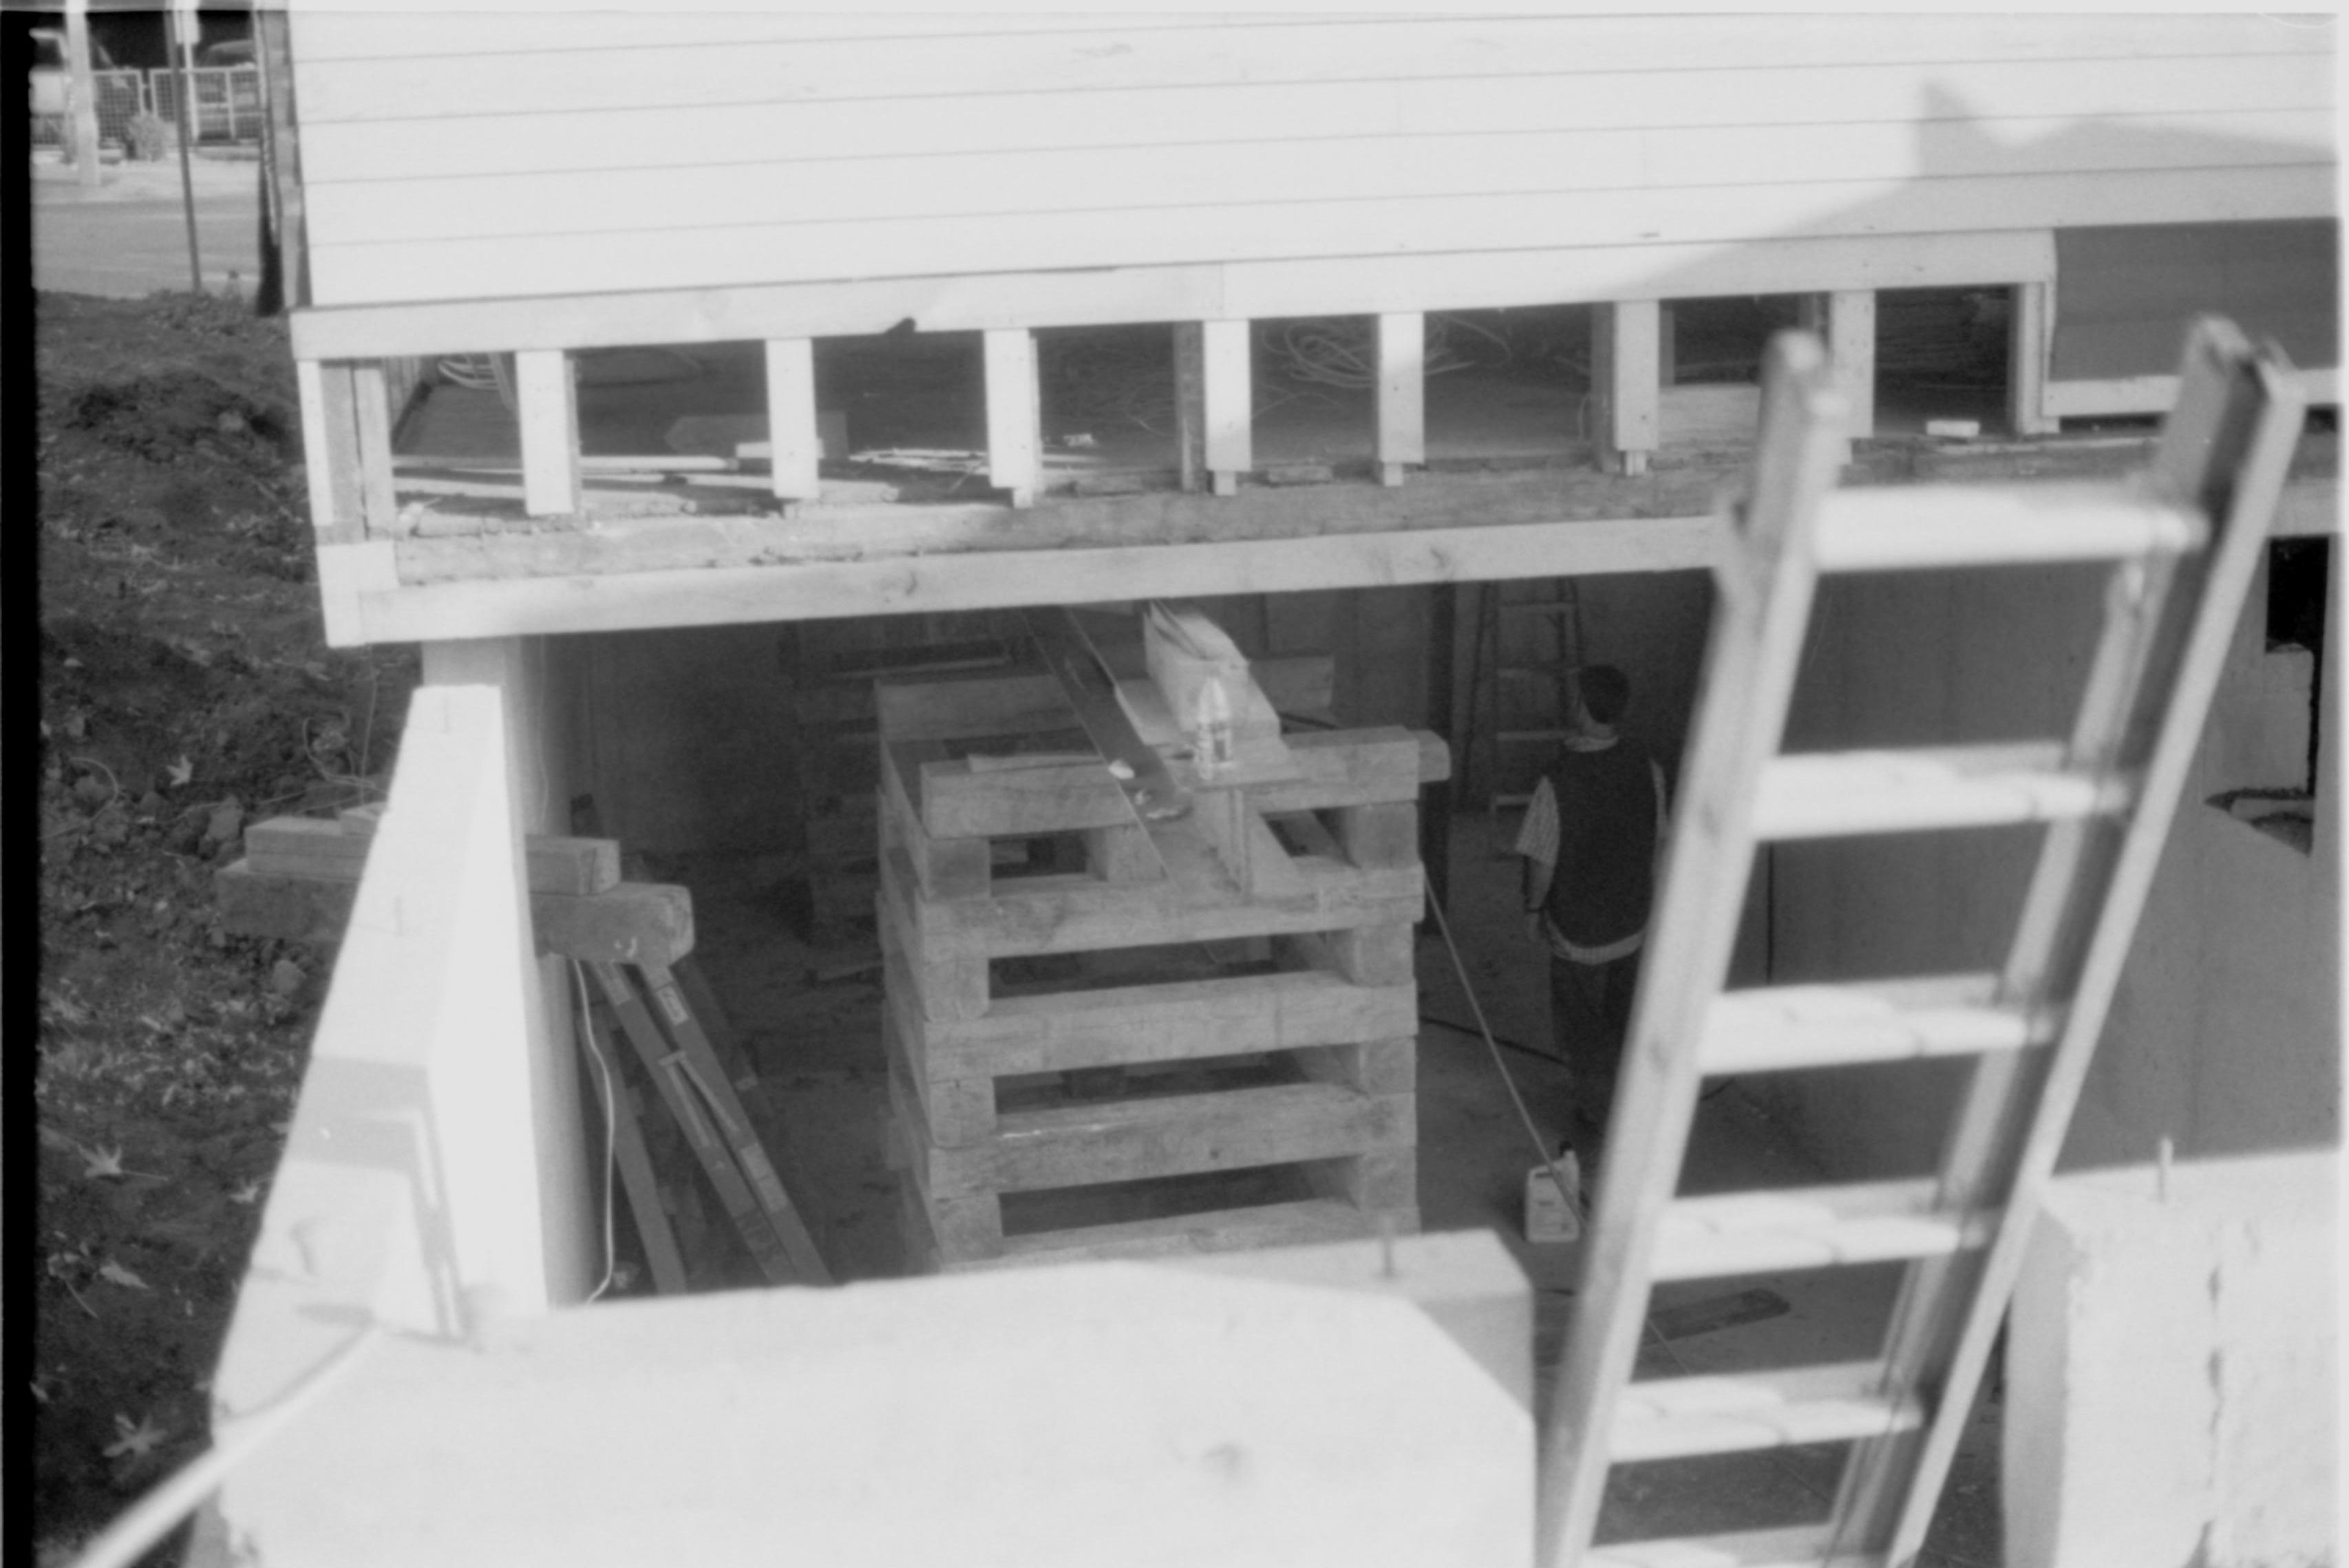 Morse - cribbing removal under house 24 Morse House, Exterior